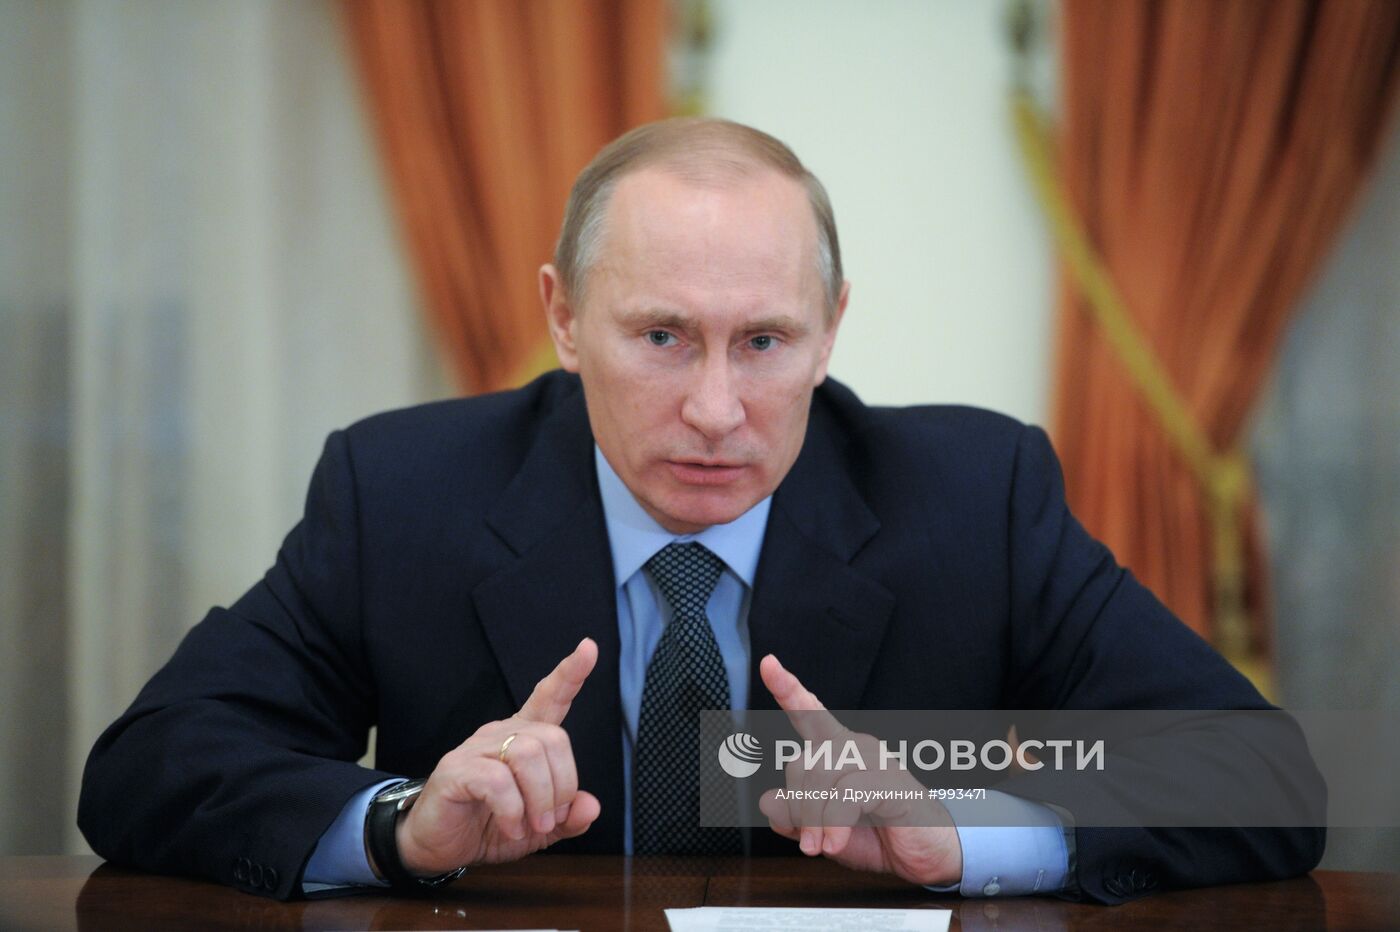 В.Путин провел встречу с руководством фракции "Единая Россия"